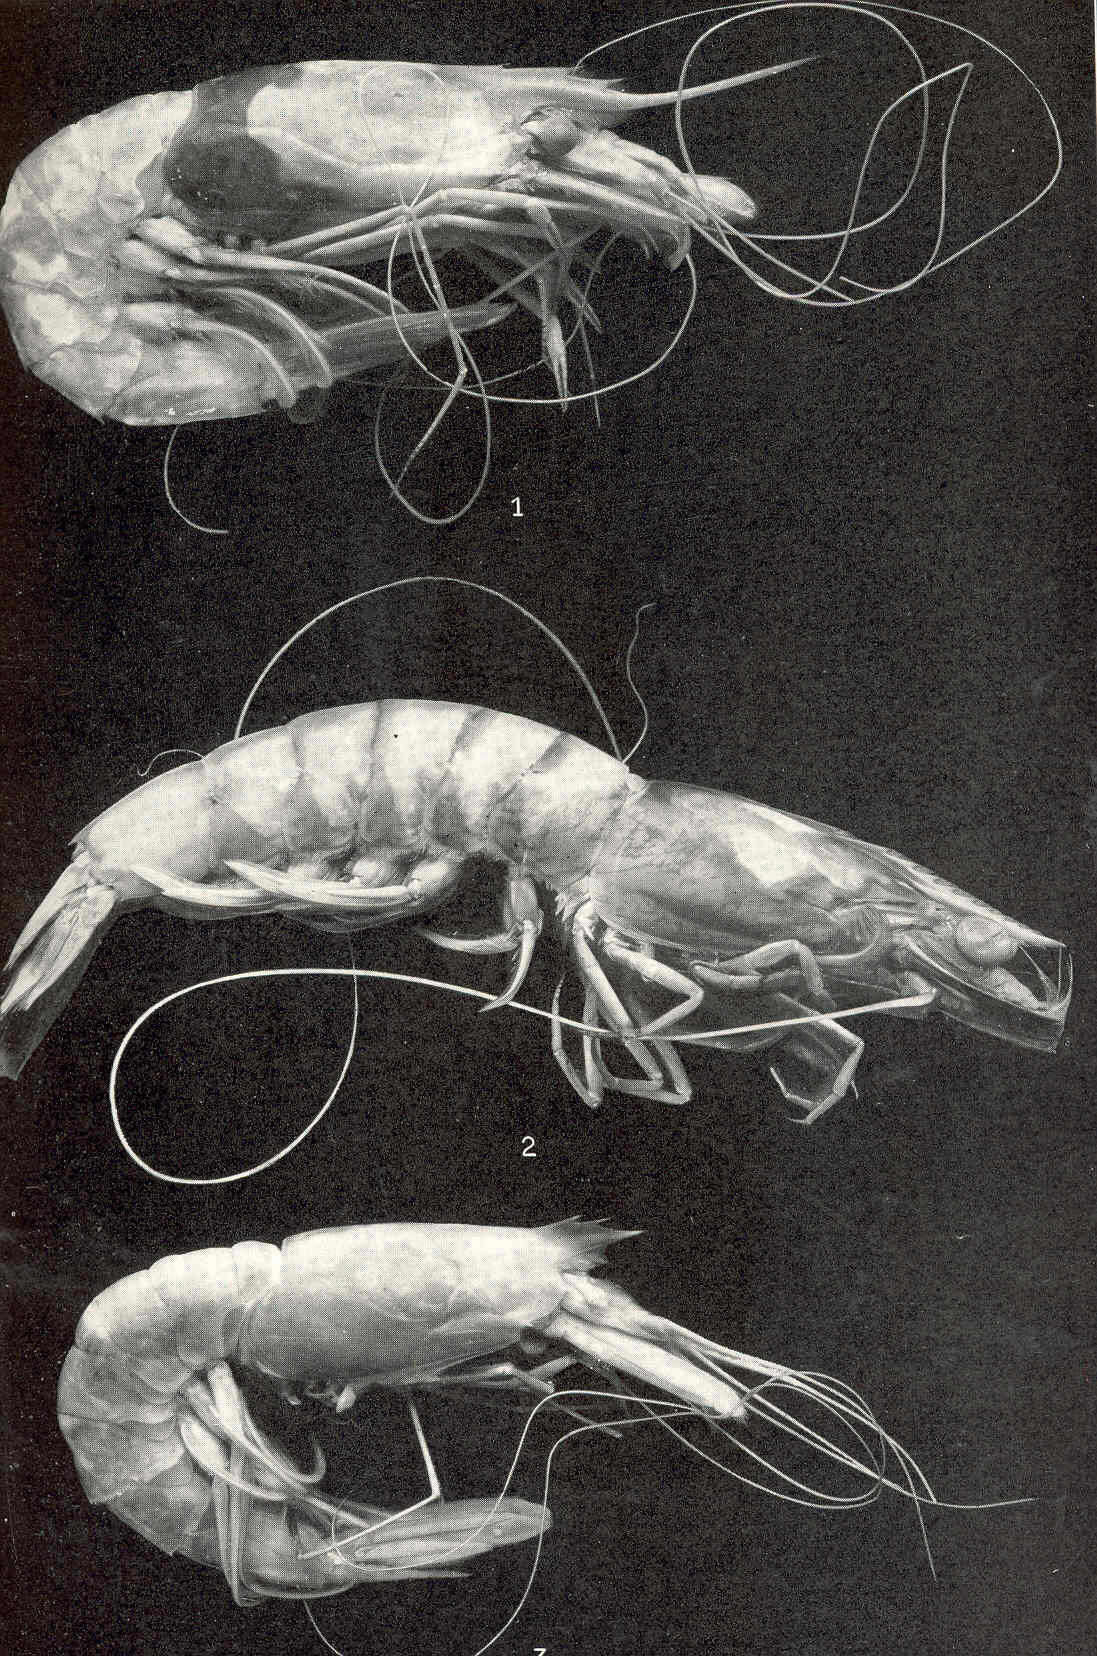 Image of aristeid shrimp